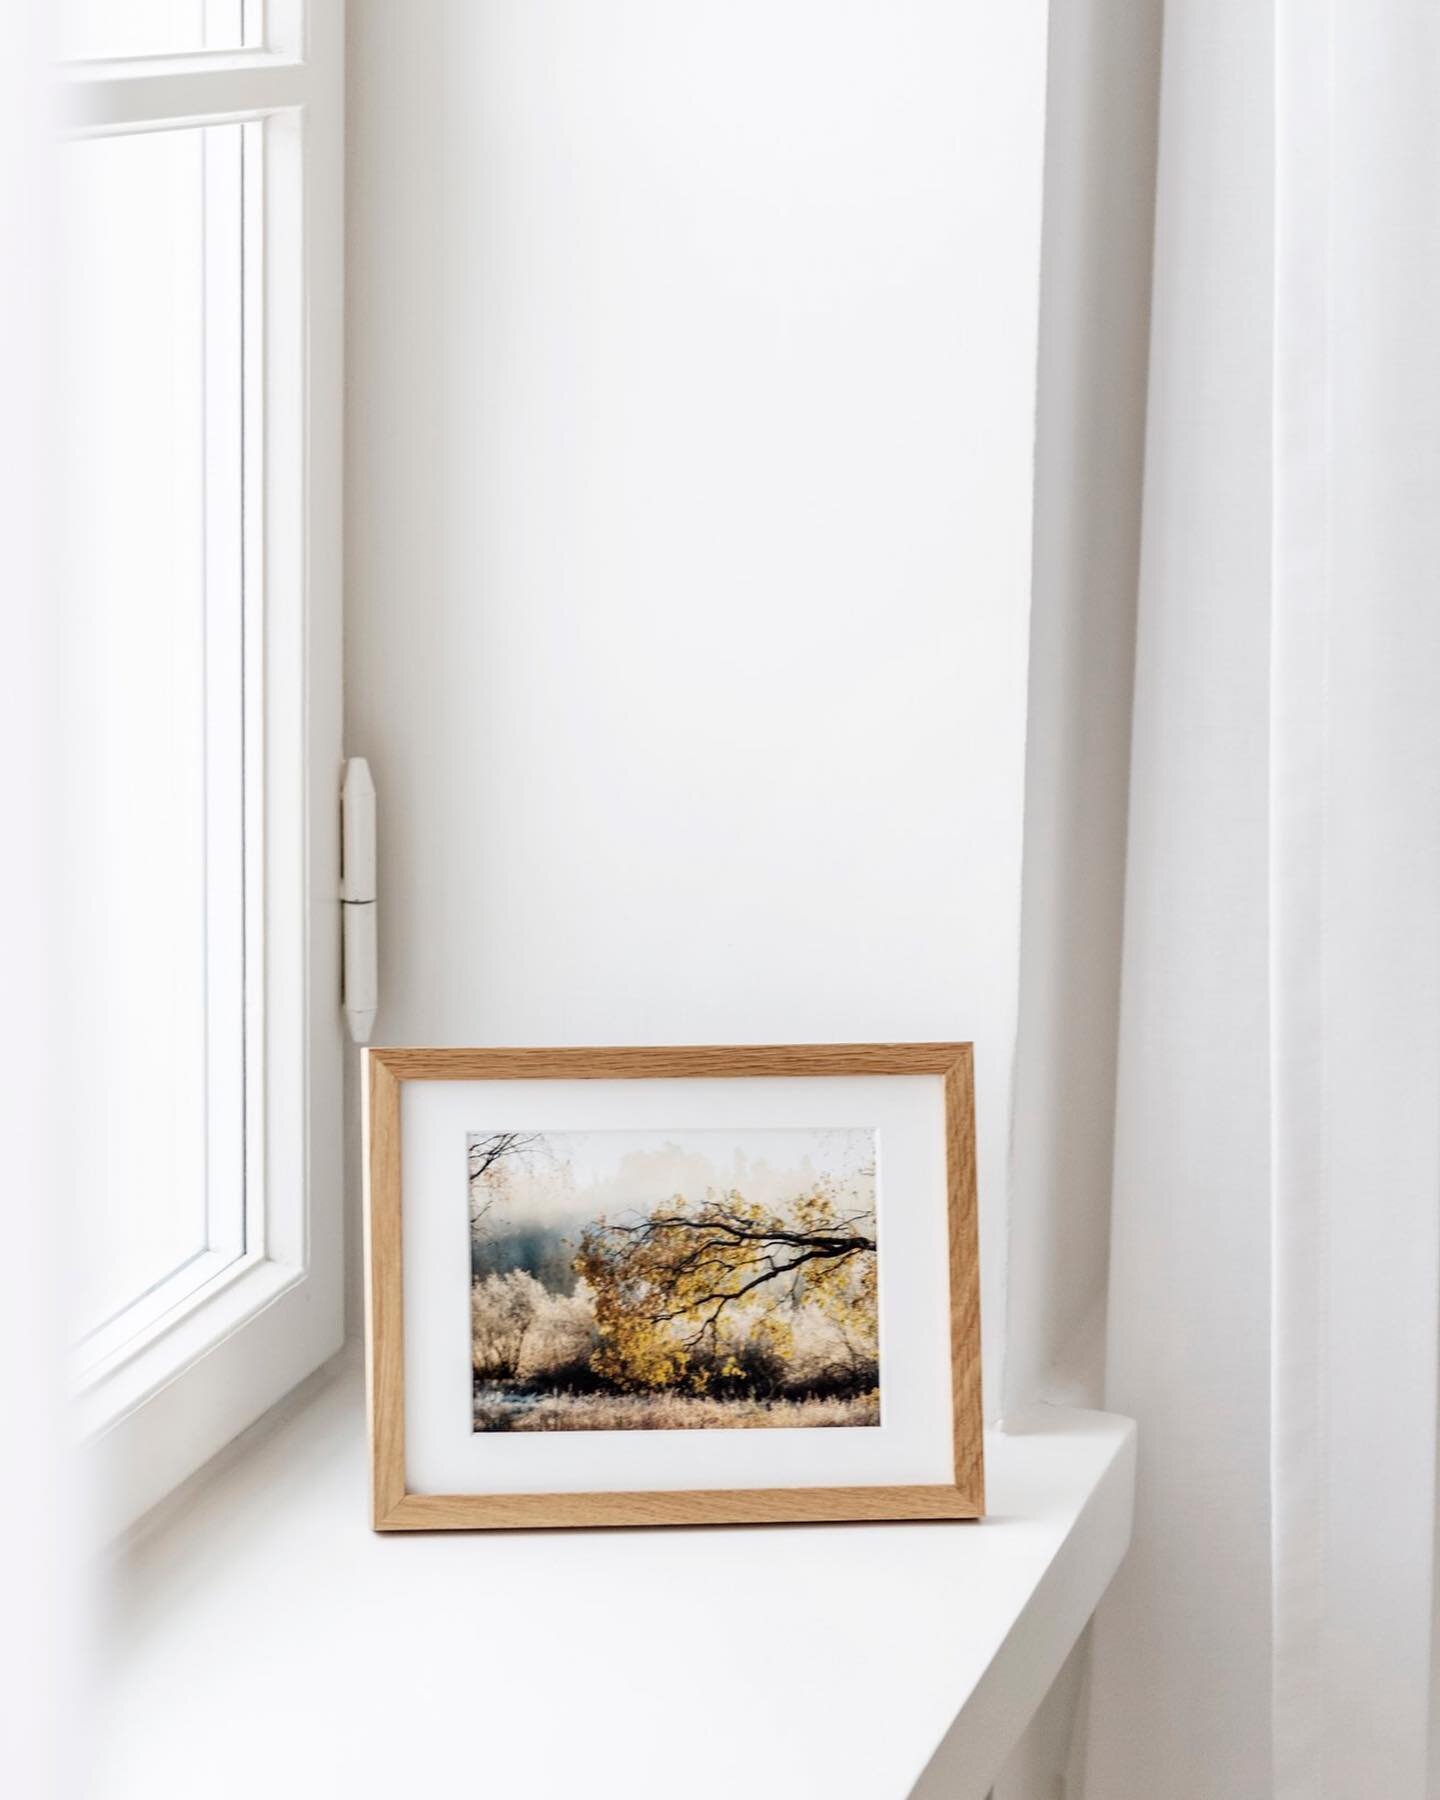 A beautiful morning moment in Finnish nature✨

#photoart #photoprint #photoartstore #homedecor #homeinspiration #wallart #scandinavianstyle #photoartist #sisustus #artprint #finnishnature #handmade #decor #nikon #board #picture #nature #valokuvataulu